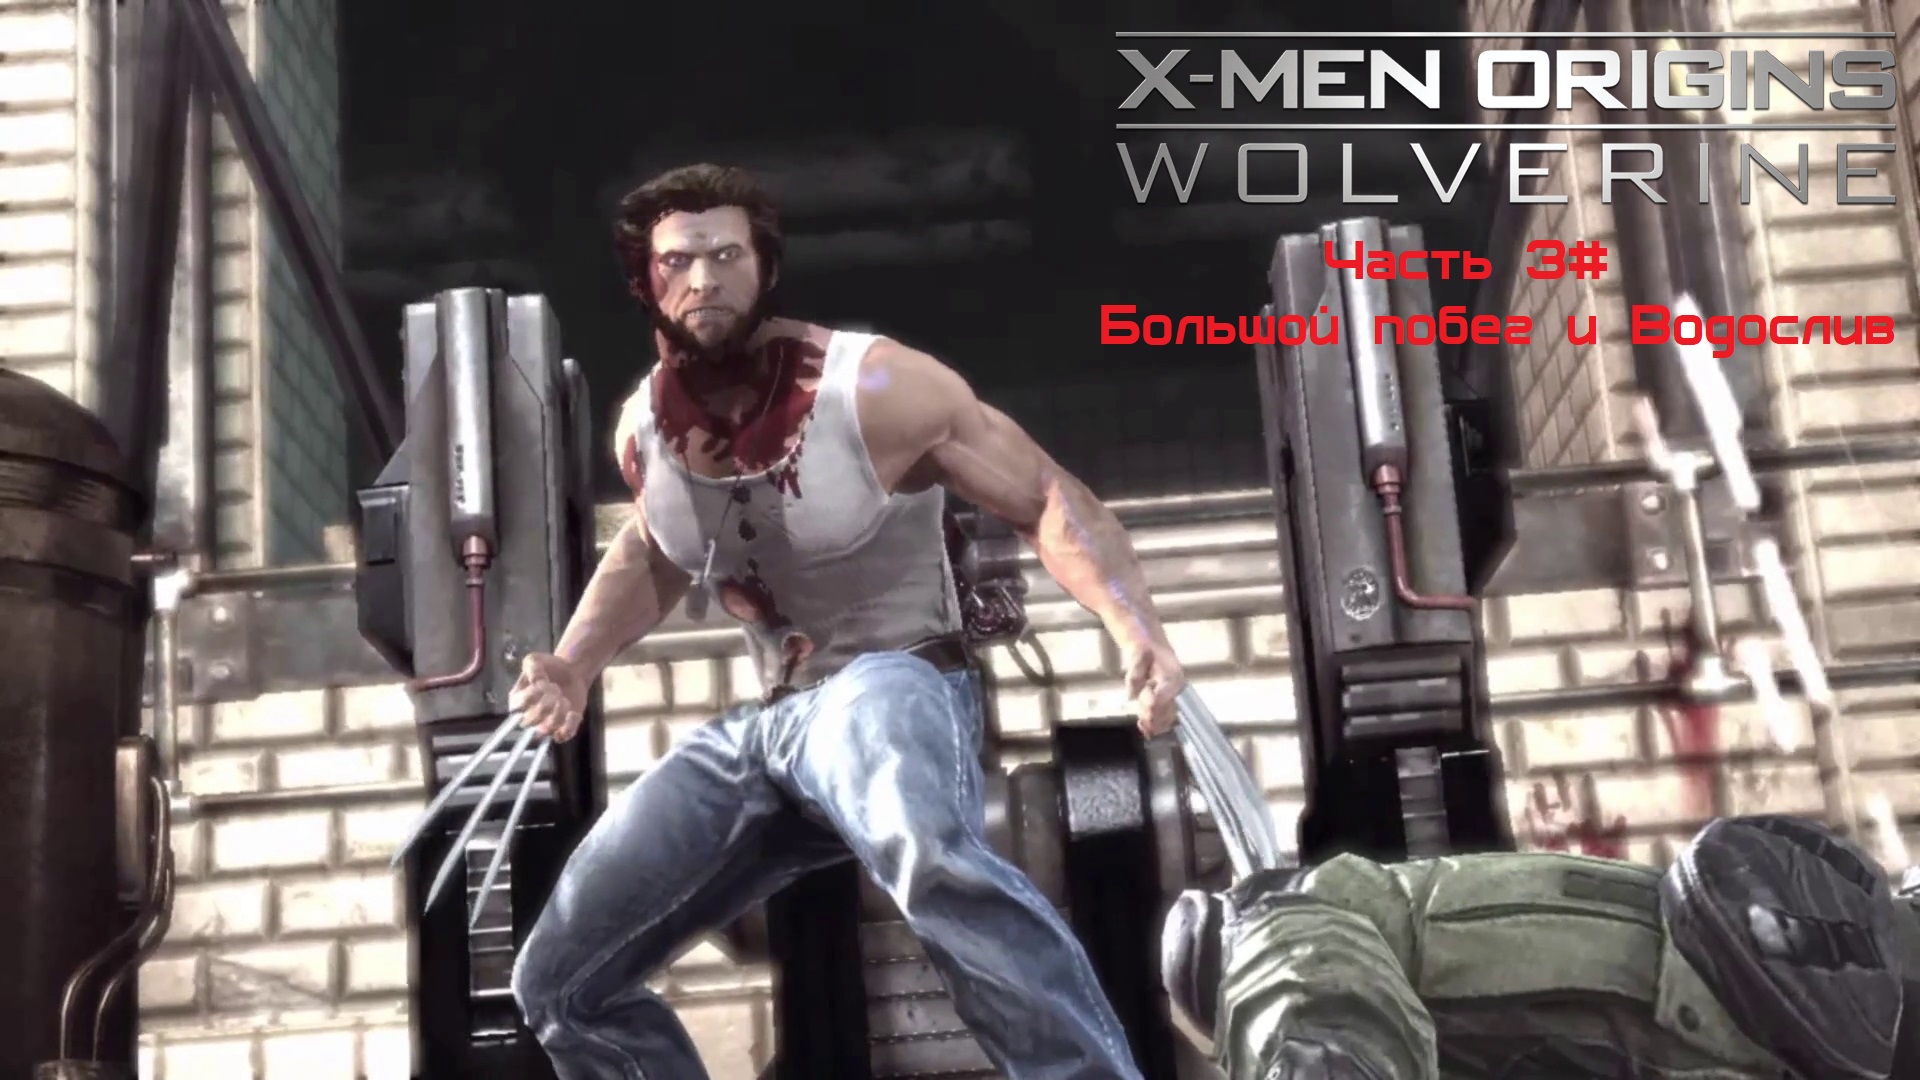 Прохождение X-Men Origins: - Wolverine Часть 3# Большой побег и Водослив (1080p 60fps)